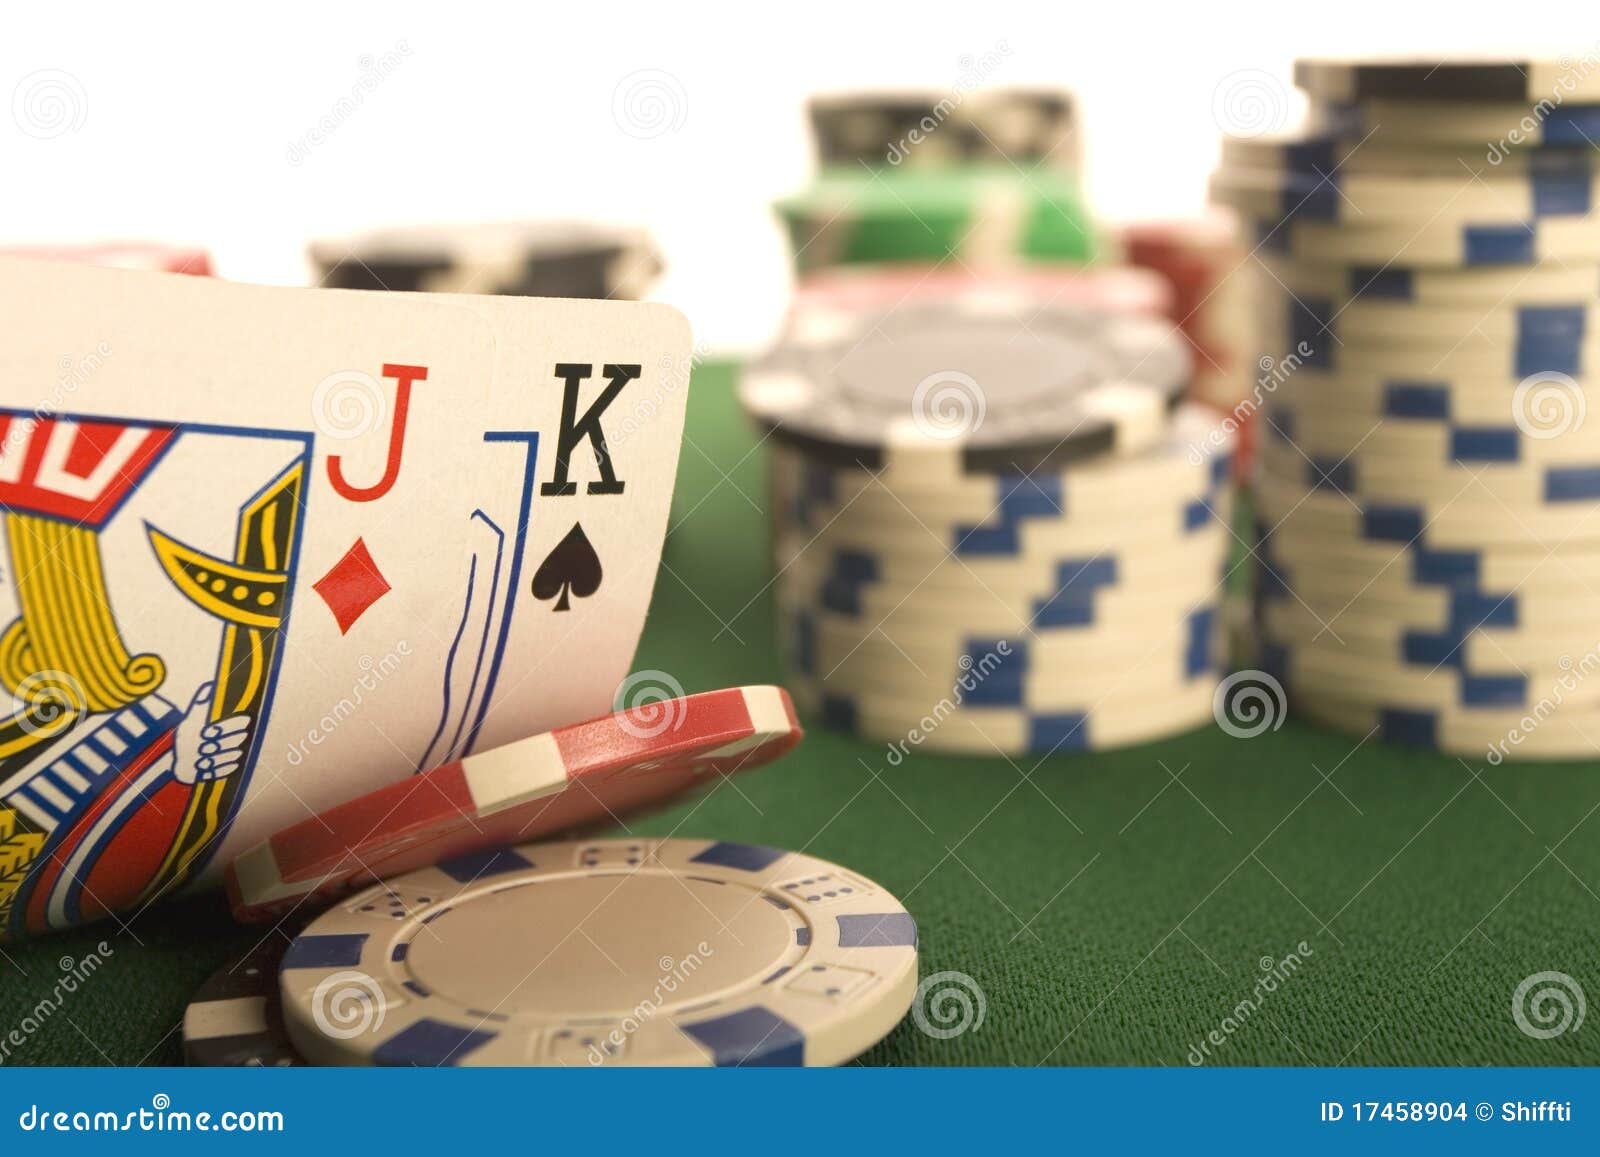 3-bet poker